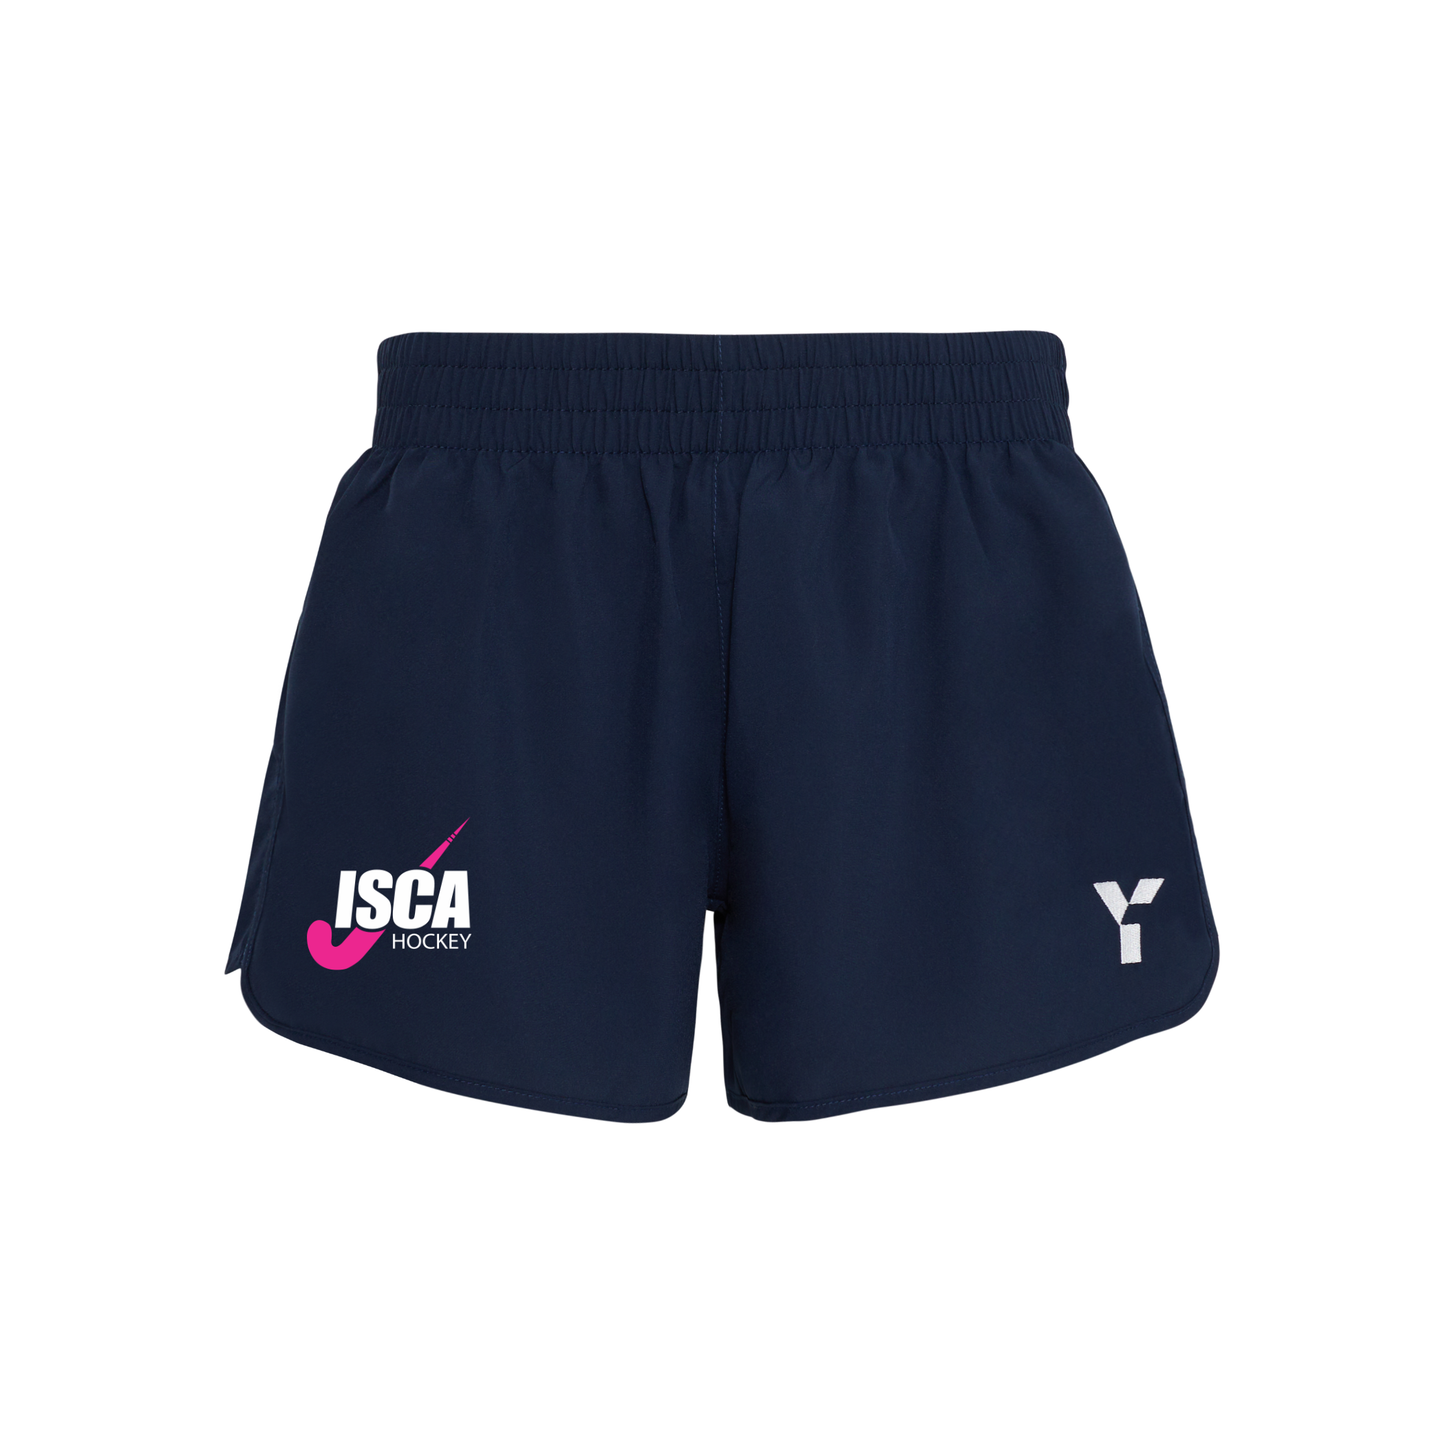 ISCA HC - Shorts Women's Navy